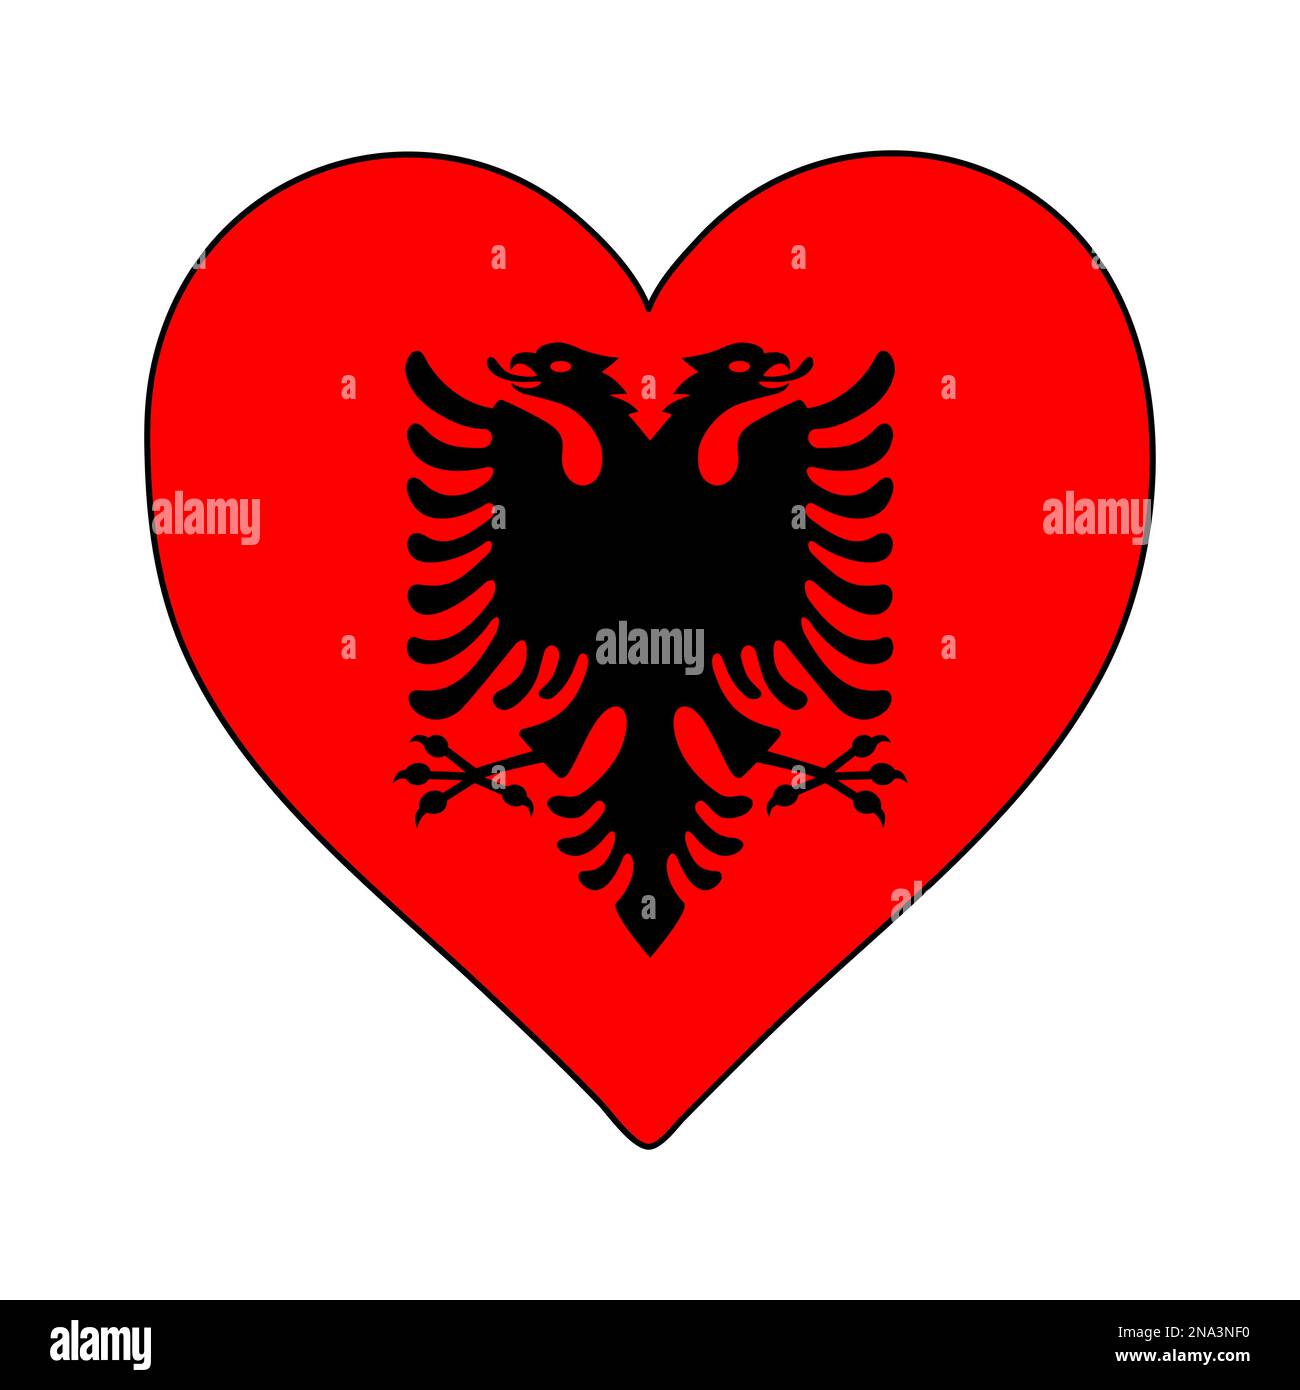 Drapeau de la forme du coeur de l'Albanie. J'aime l'Albanie. Visitez l'Albanie. Europe du Sud. Europe. Union européenne. Conception graphique d'illustration vectorielle. Illustration de Vecteur